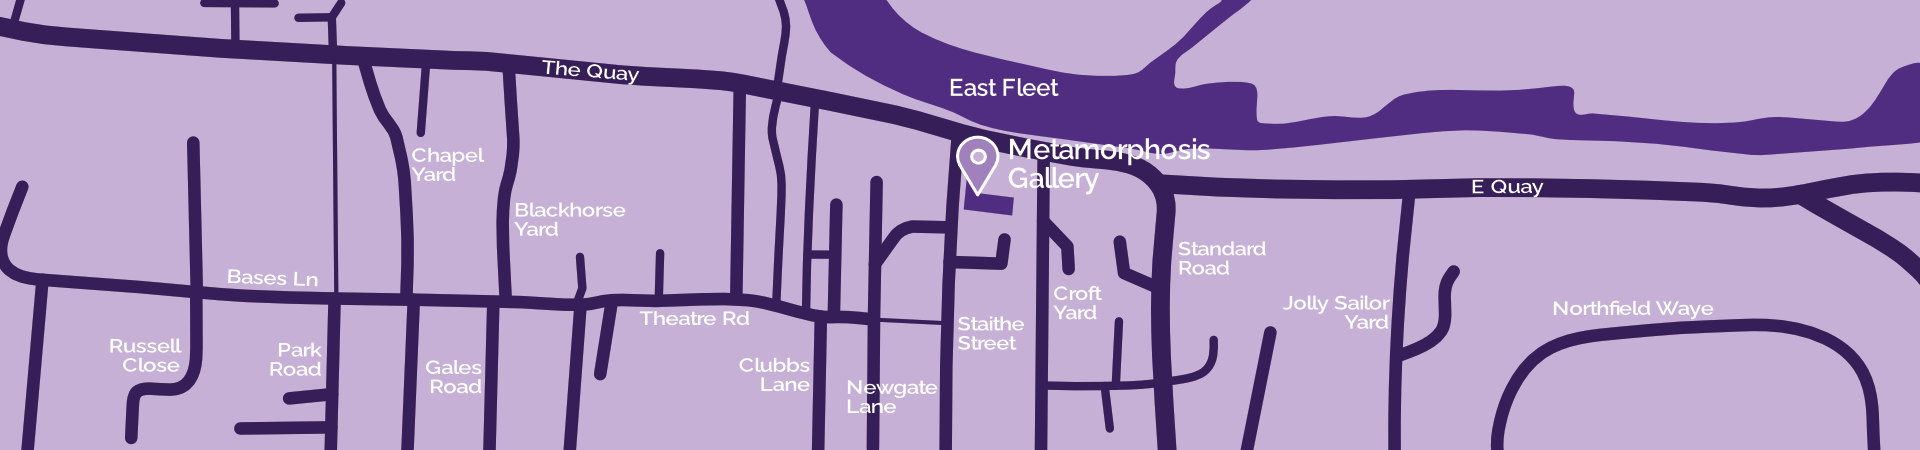 metamorphosis gallery street map